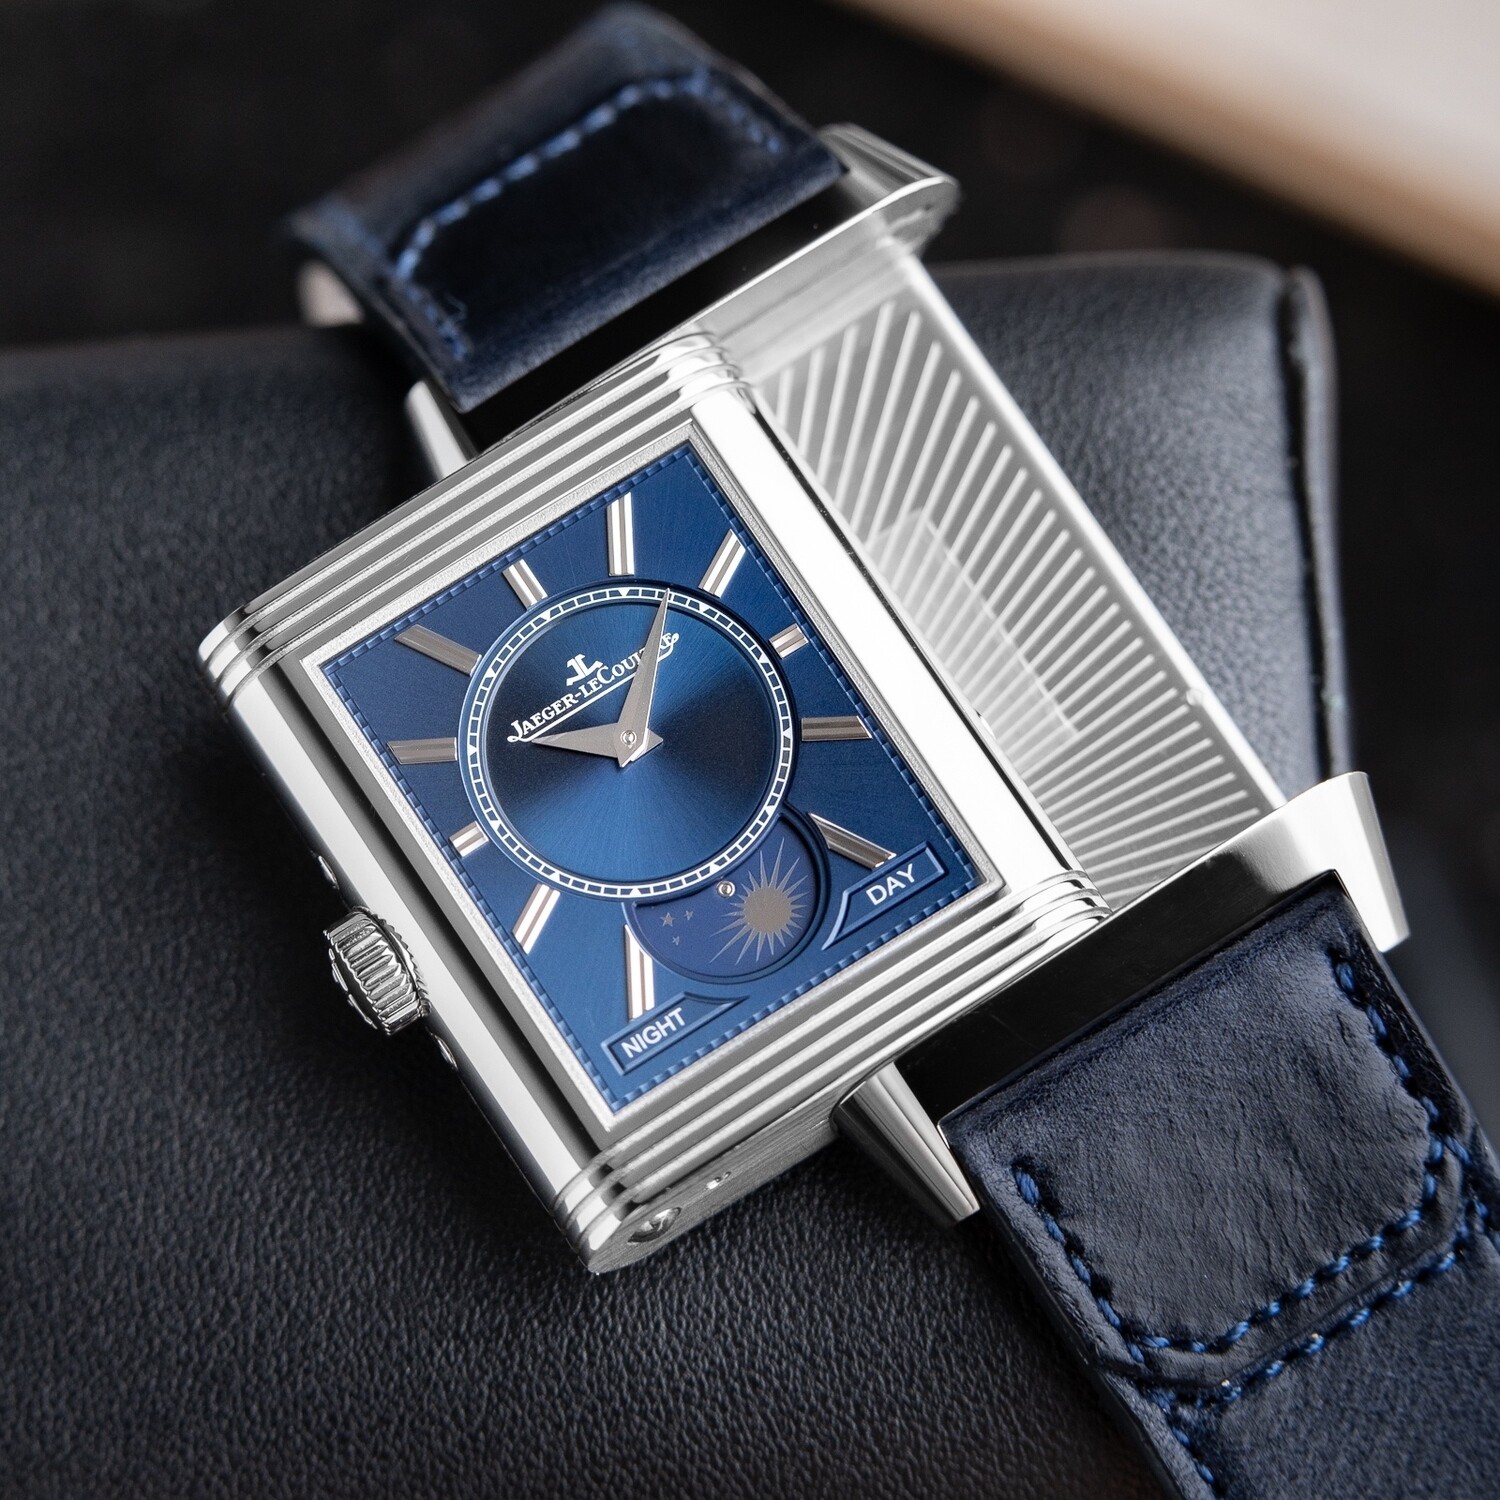 Создание коллекции часов Jaeger-LeCoultre на 25 000 евро